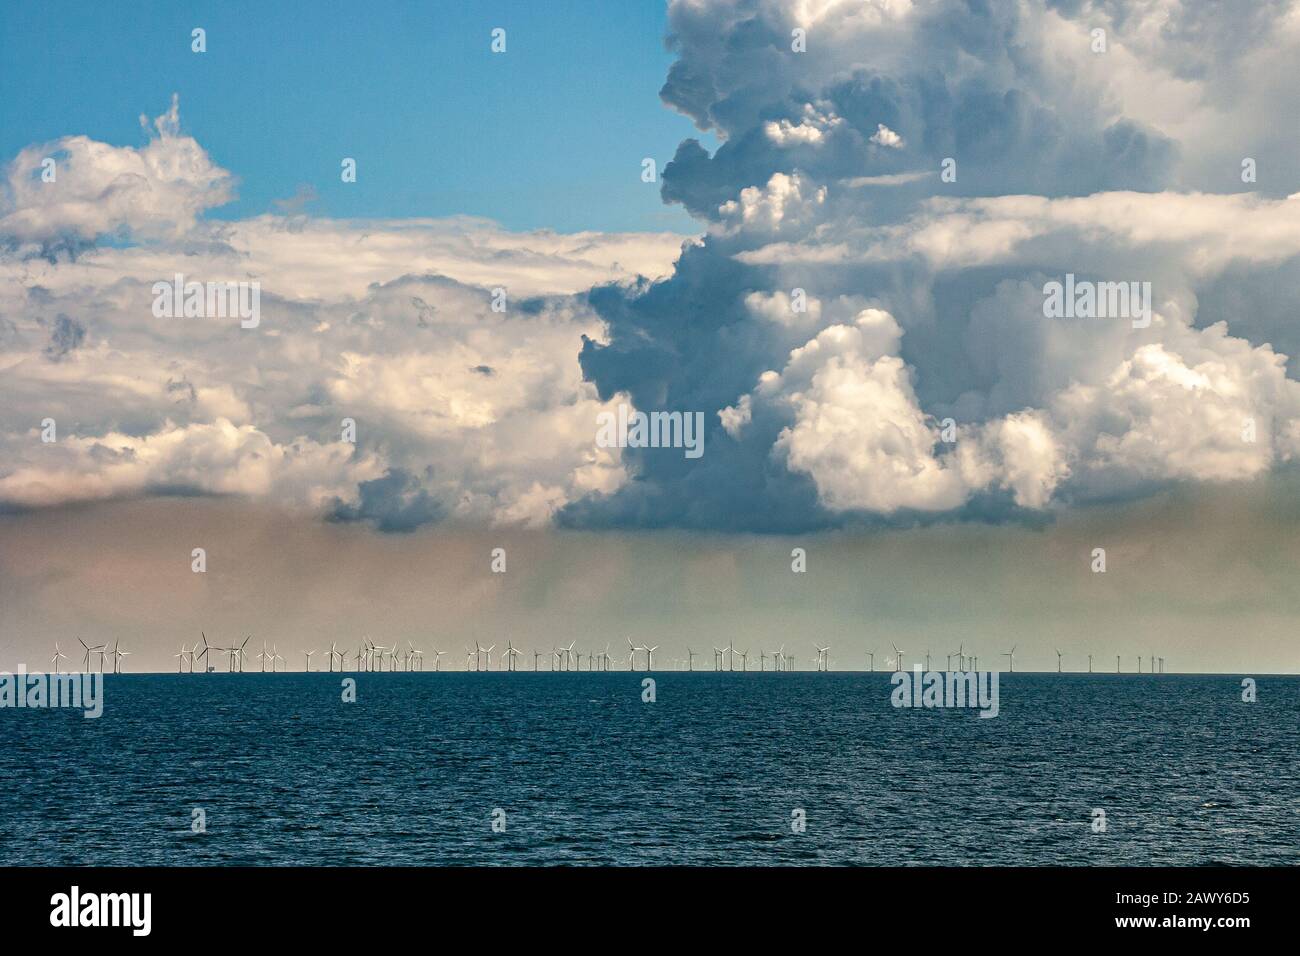 planta de energía eólica en alta mar Foto de stock